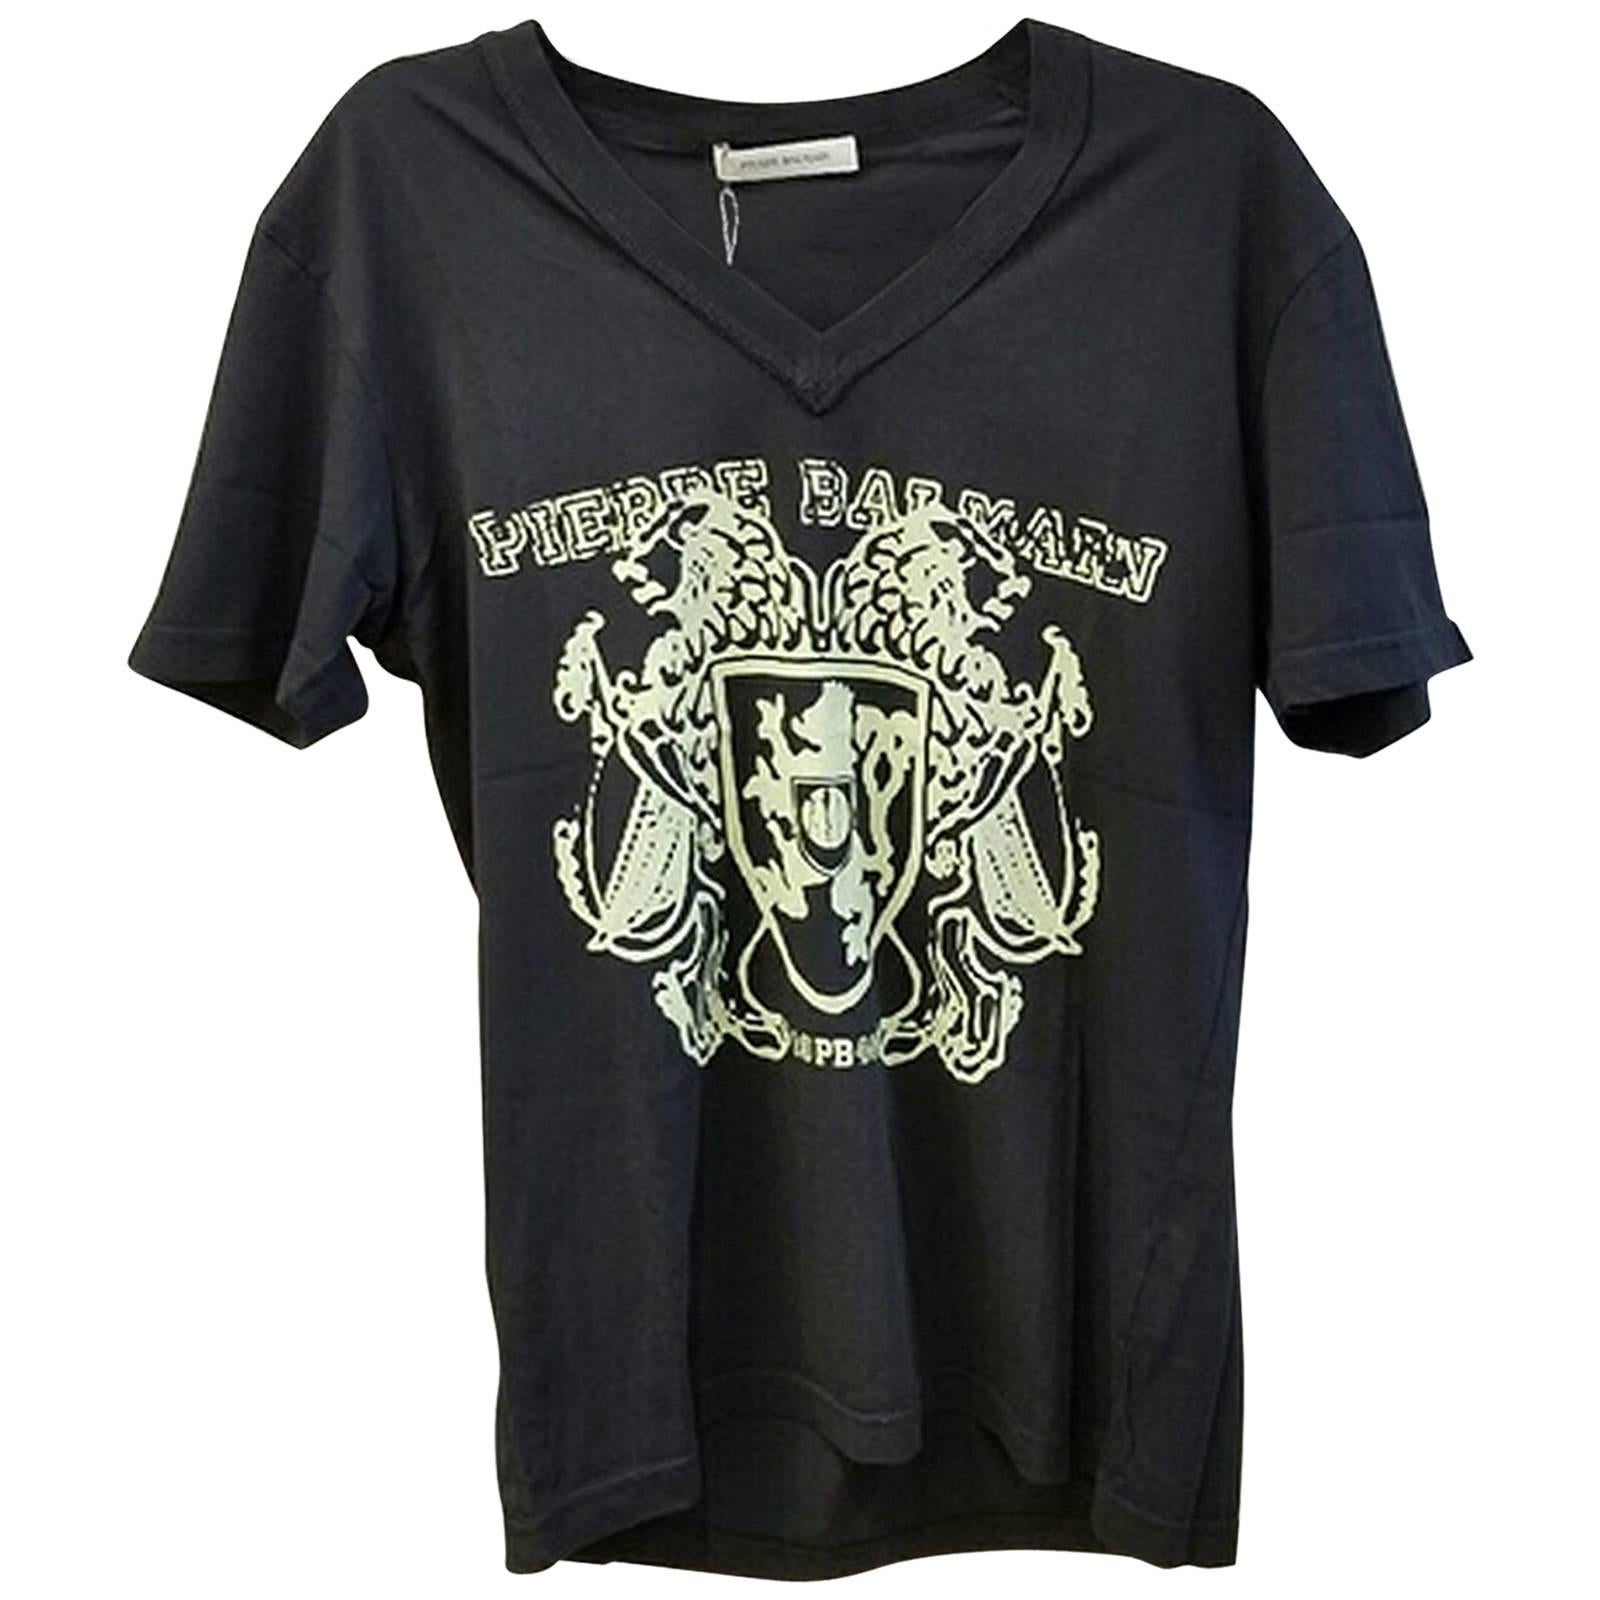 Pierre Balmain T Shirt NWT Black (XL) For Sale